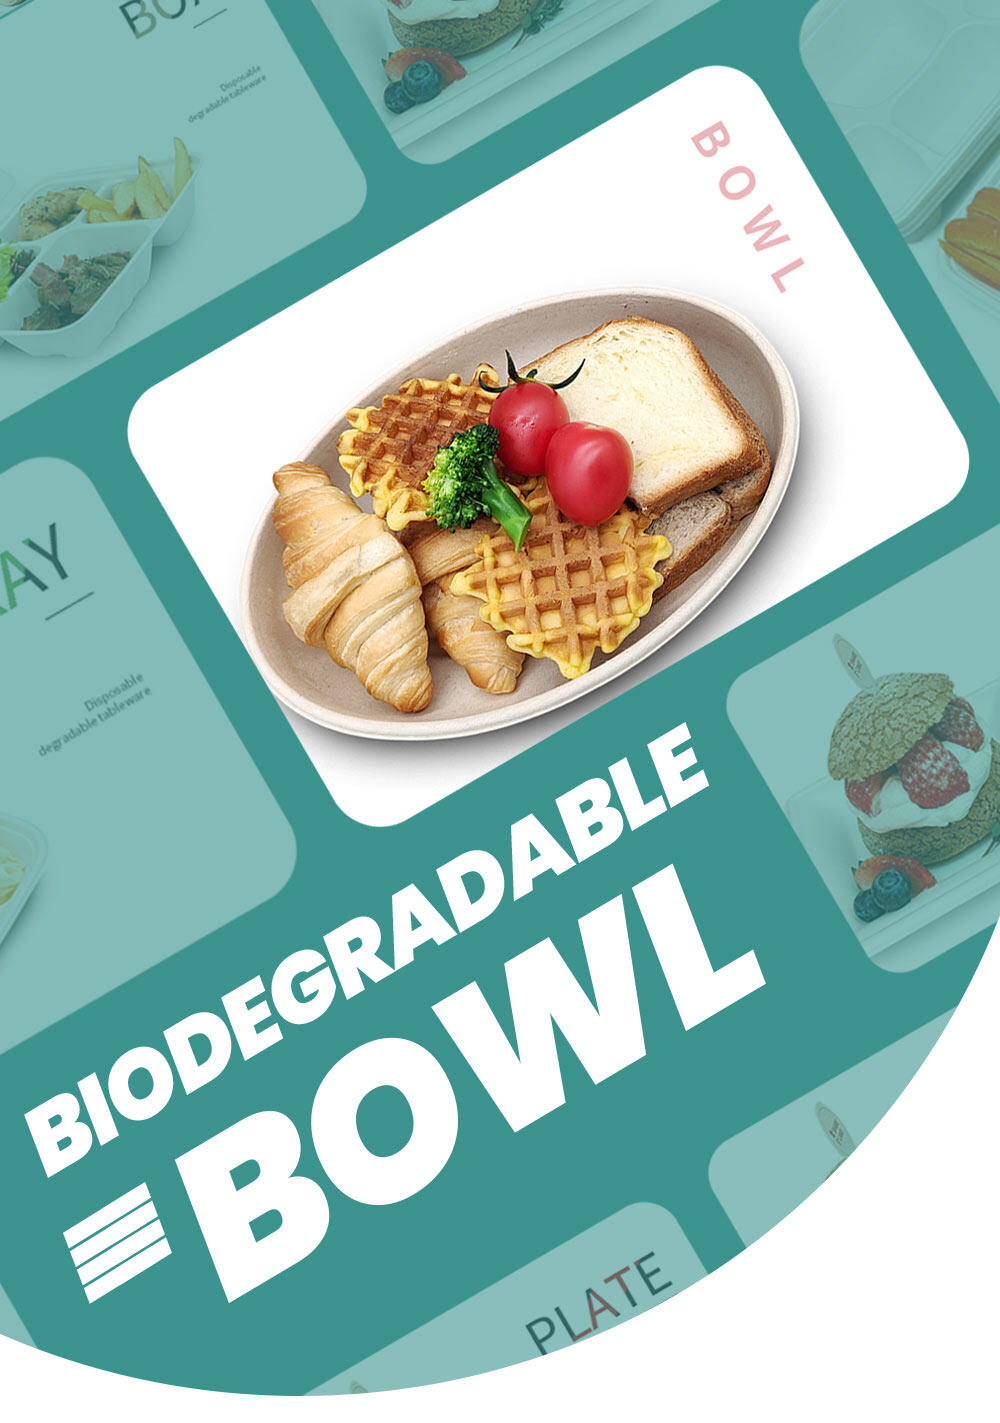 biodegradable paper bowl